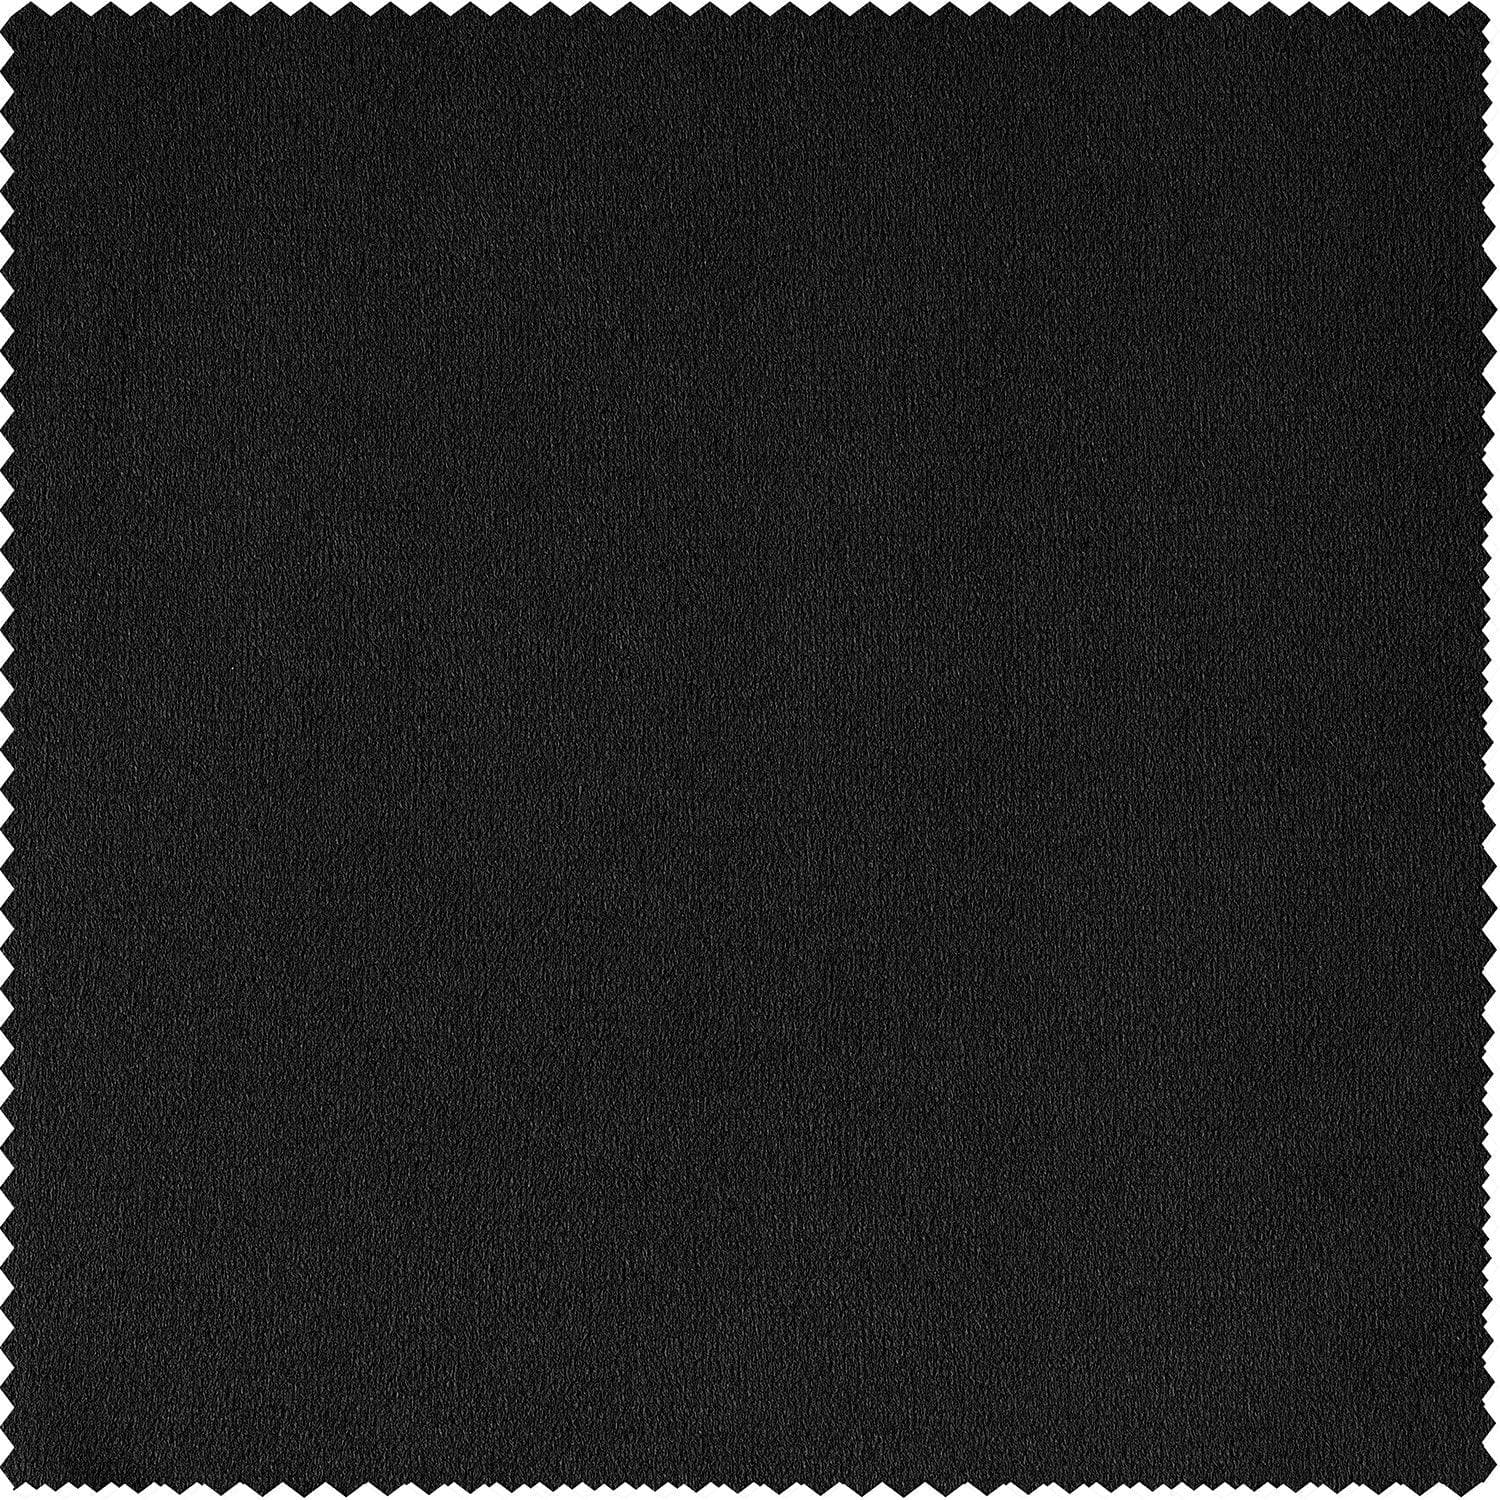 Warm Black Grommet Signature Velvet Blackout Curtain